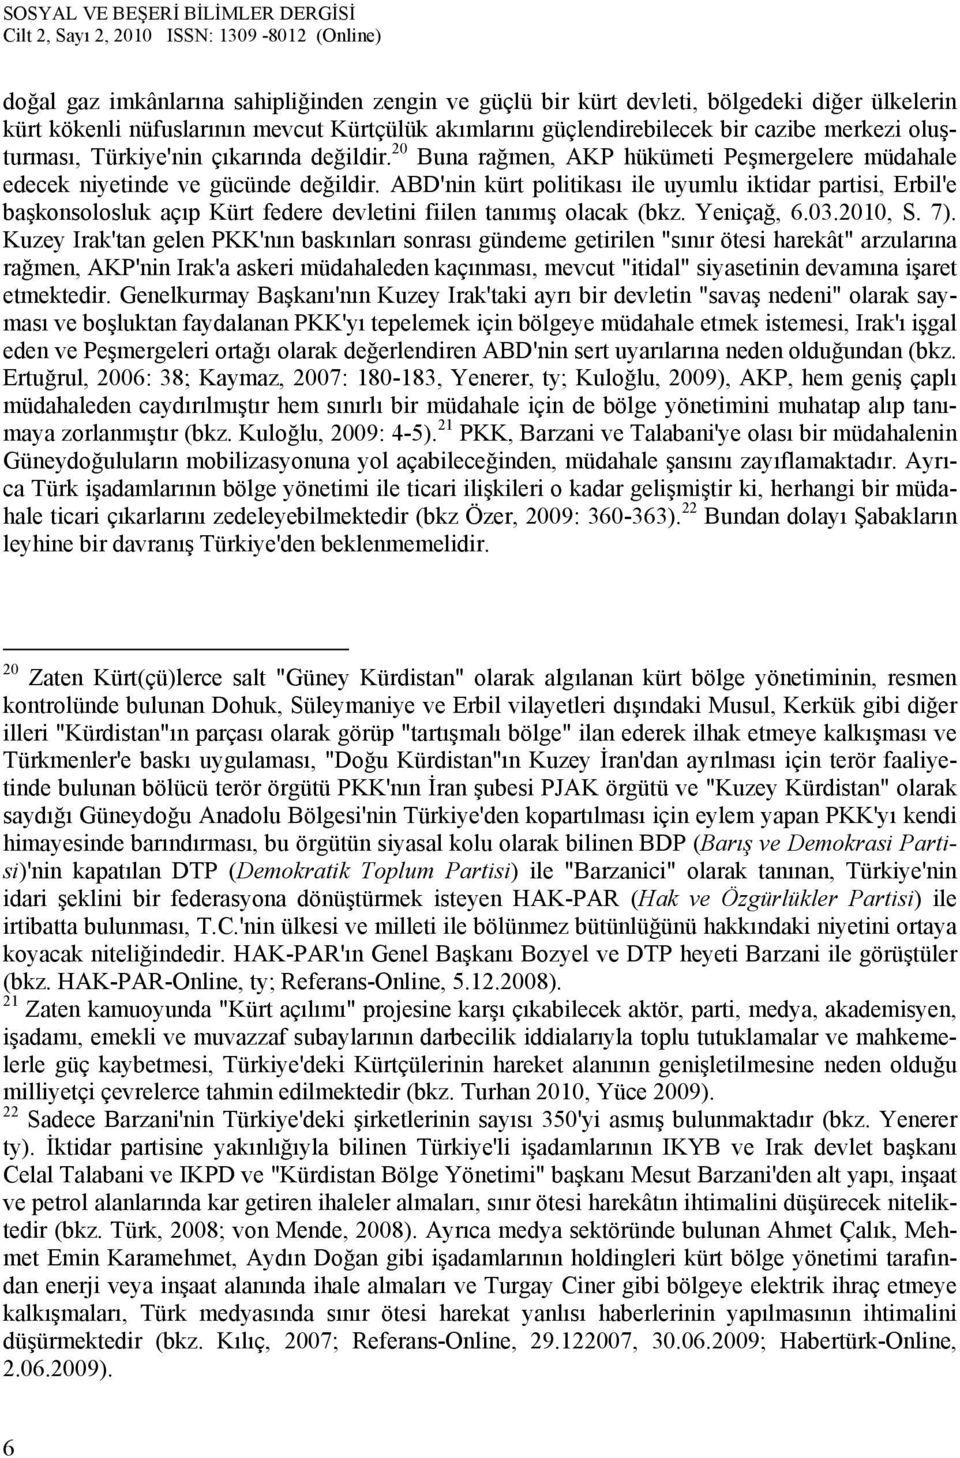 ABD'nin kürt politikası ile uyumlu iktidar partisi, Erbil'e başkonsolosluk açıp Kürt federe devletini fiilen tanımış olacak (bkz. Yeniçağ, 6.03.2010, S. 7).